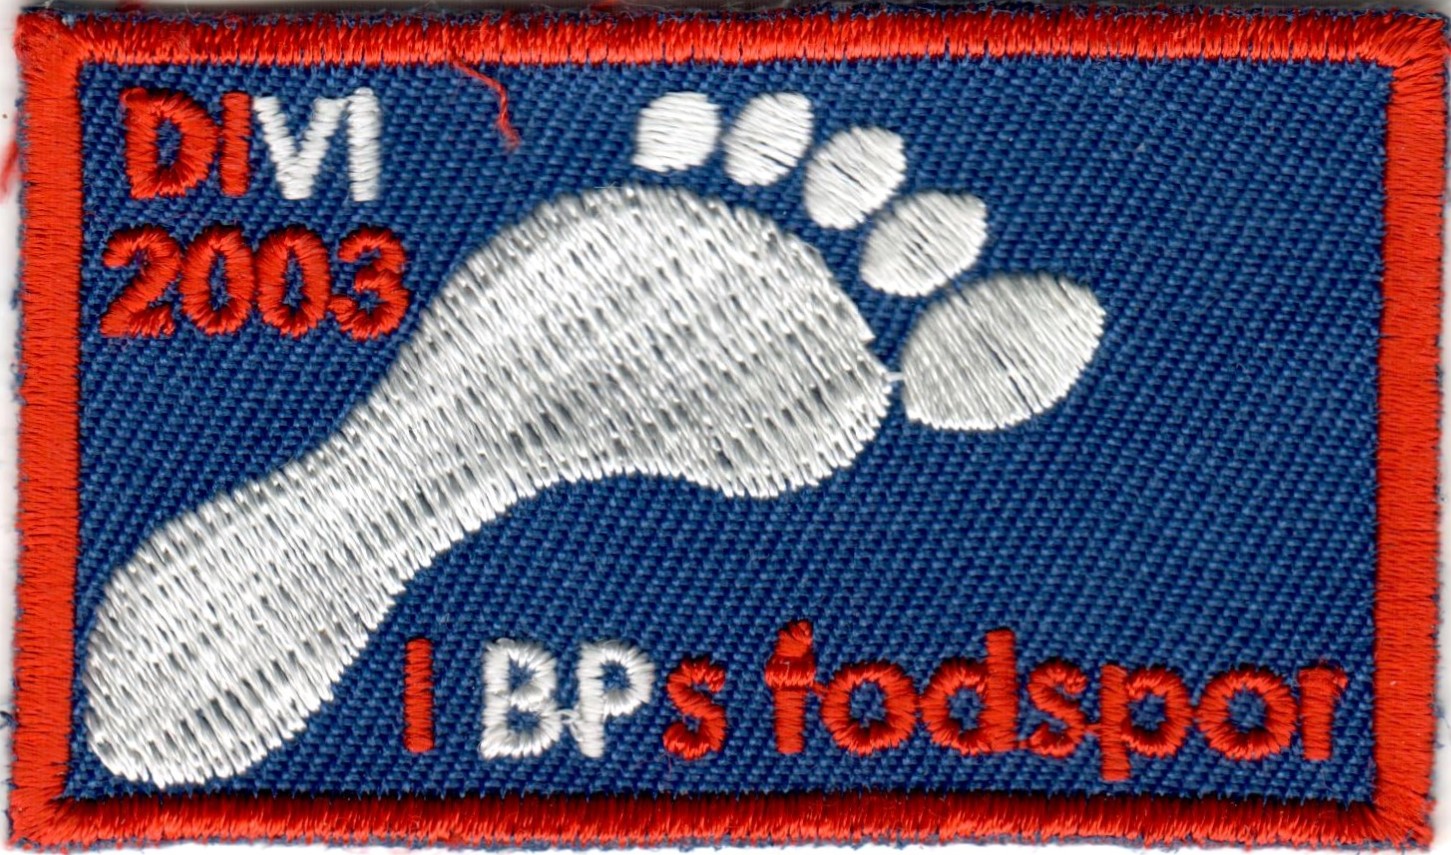 2003 - DIVI - I BPs fodspor